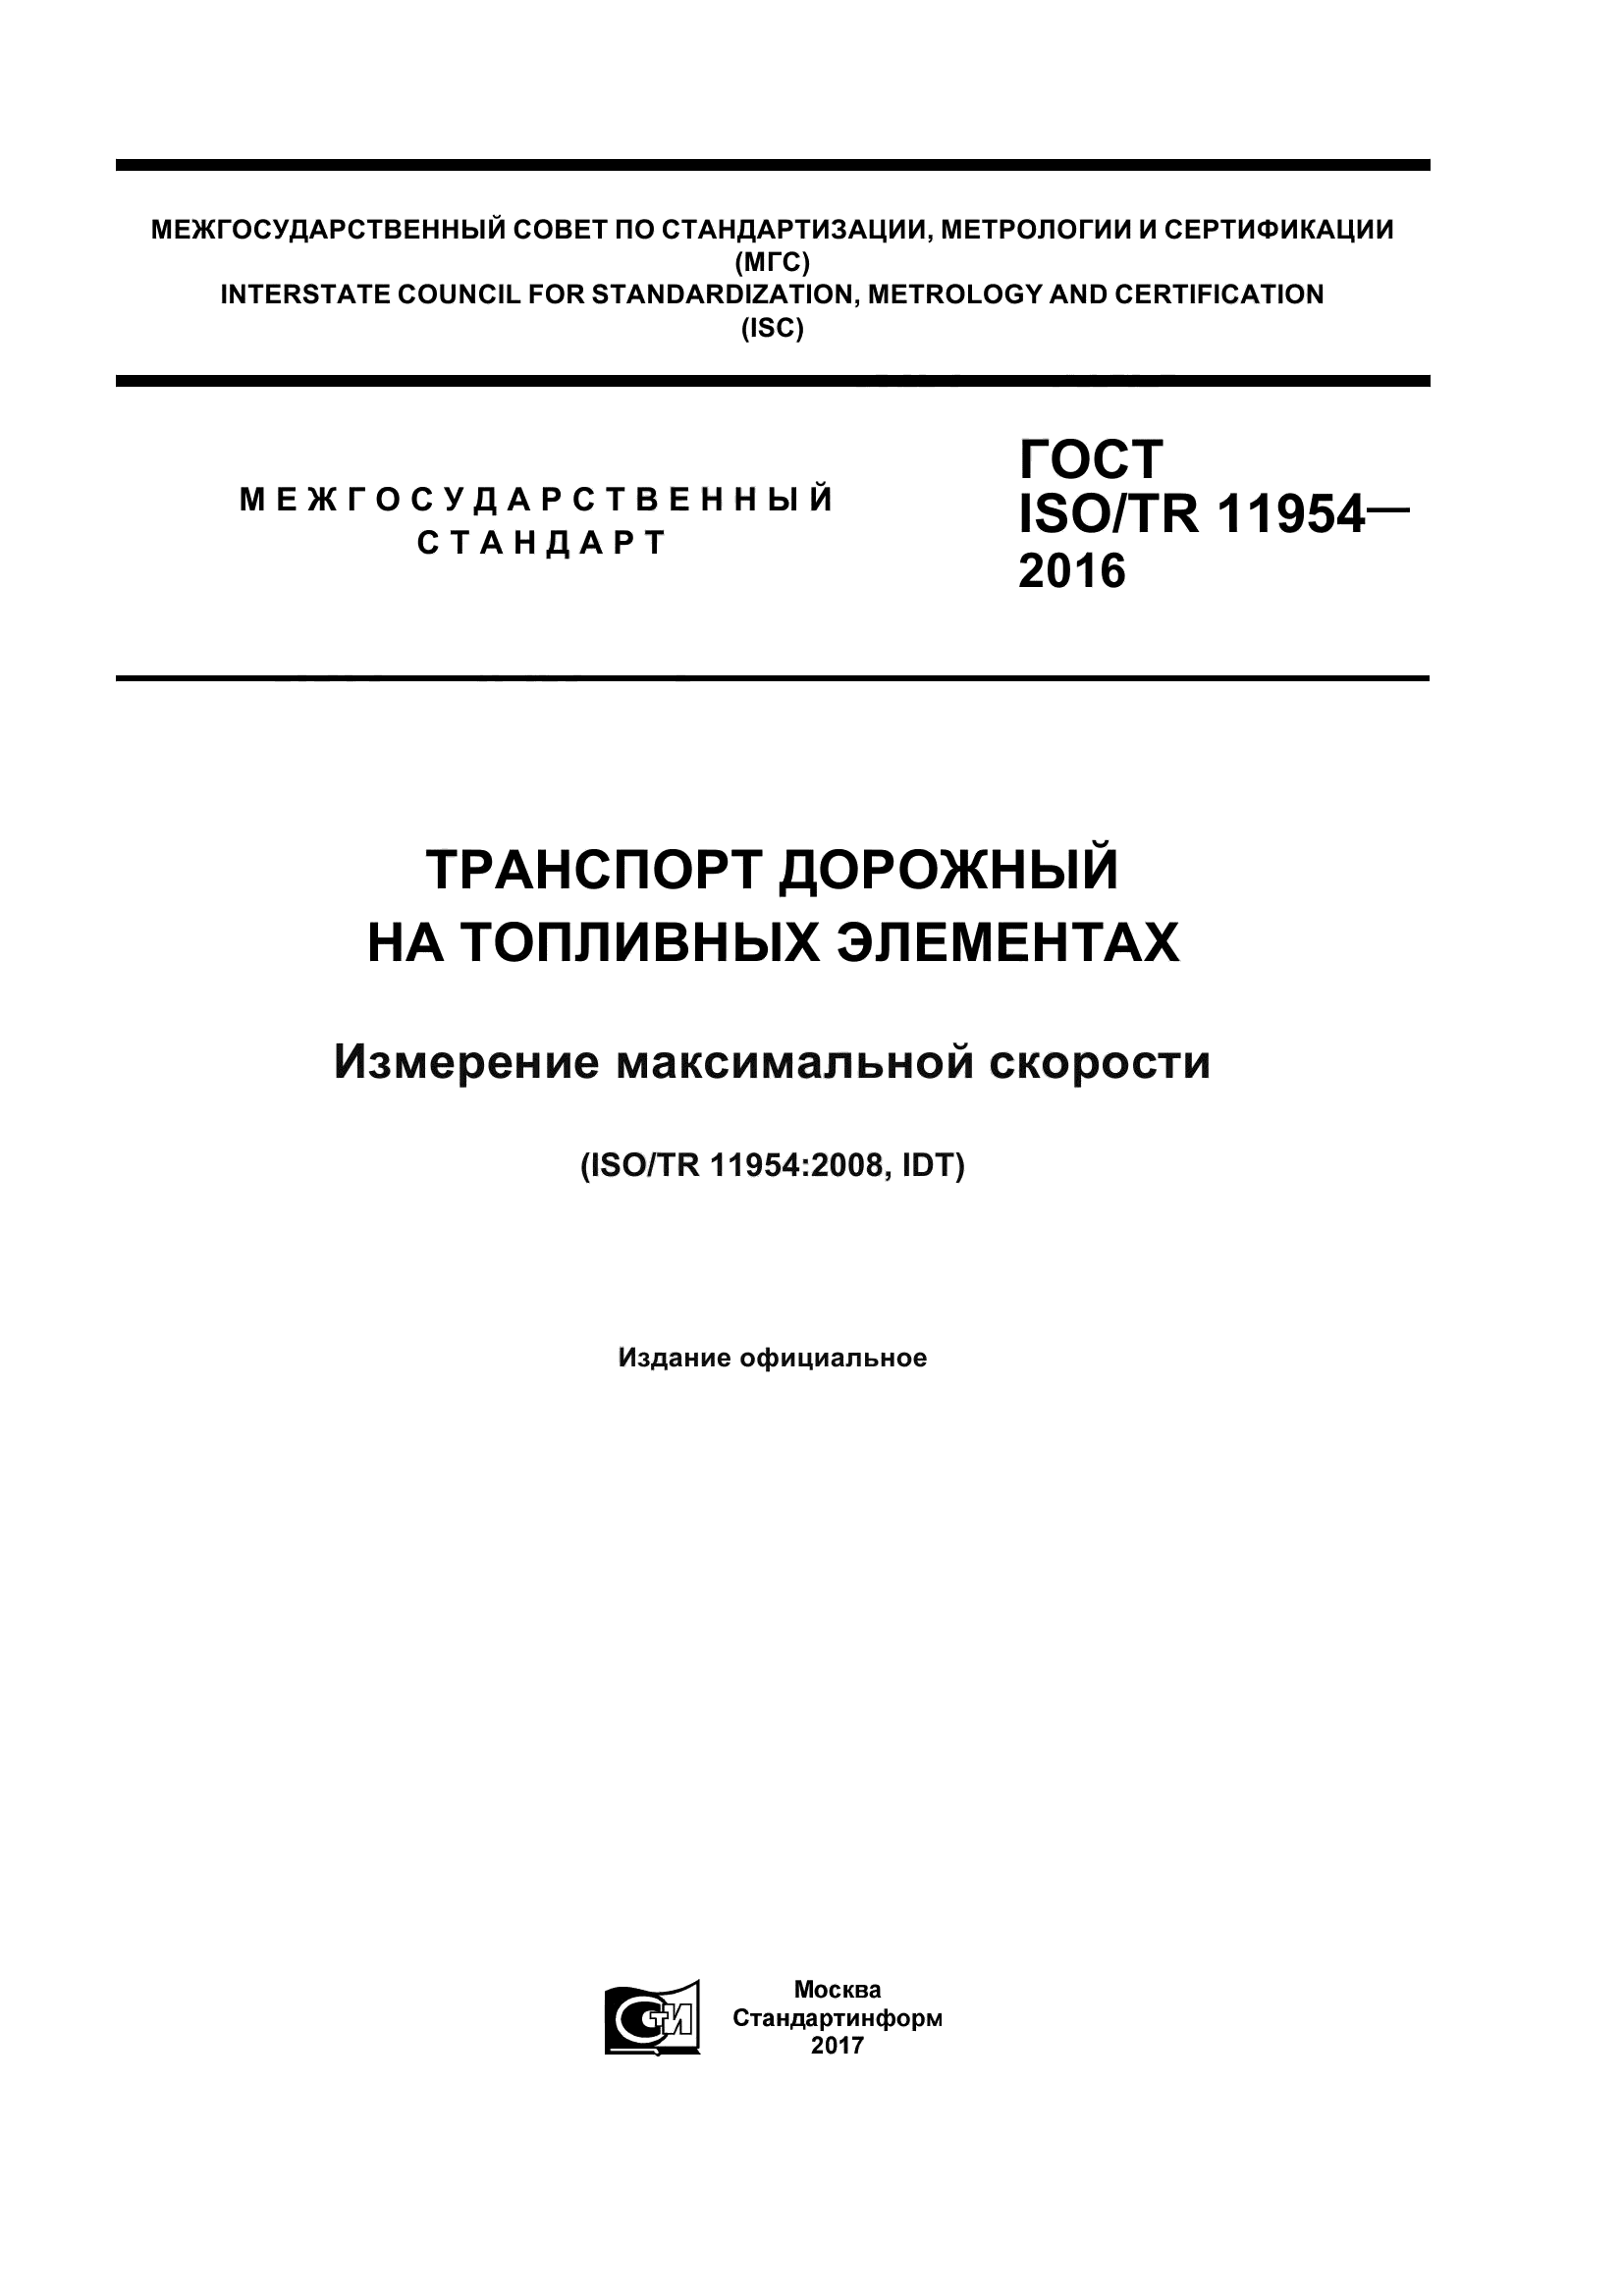 ГОСТ ISO/TR 11954-2016